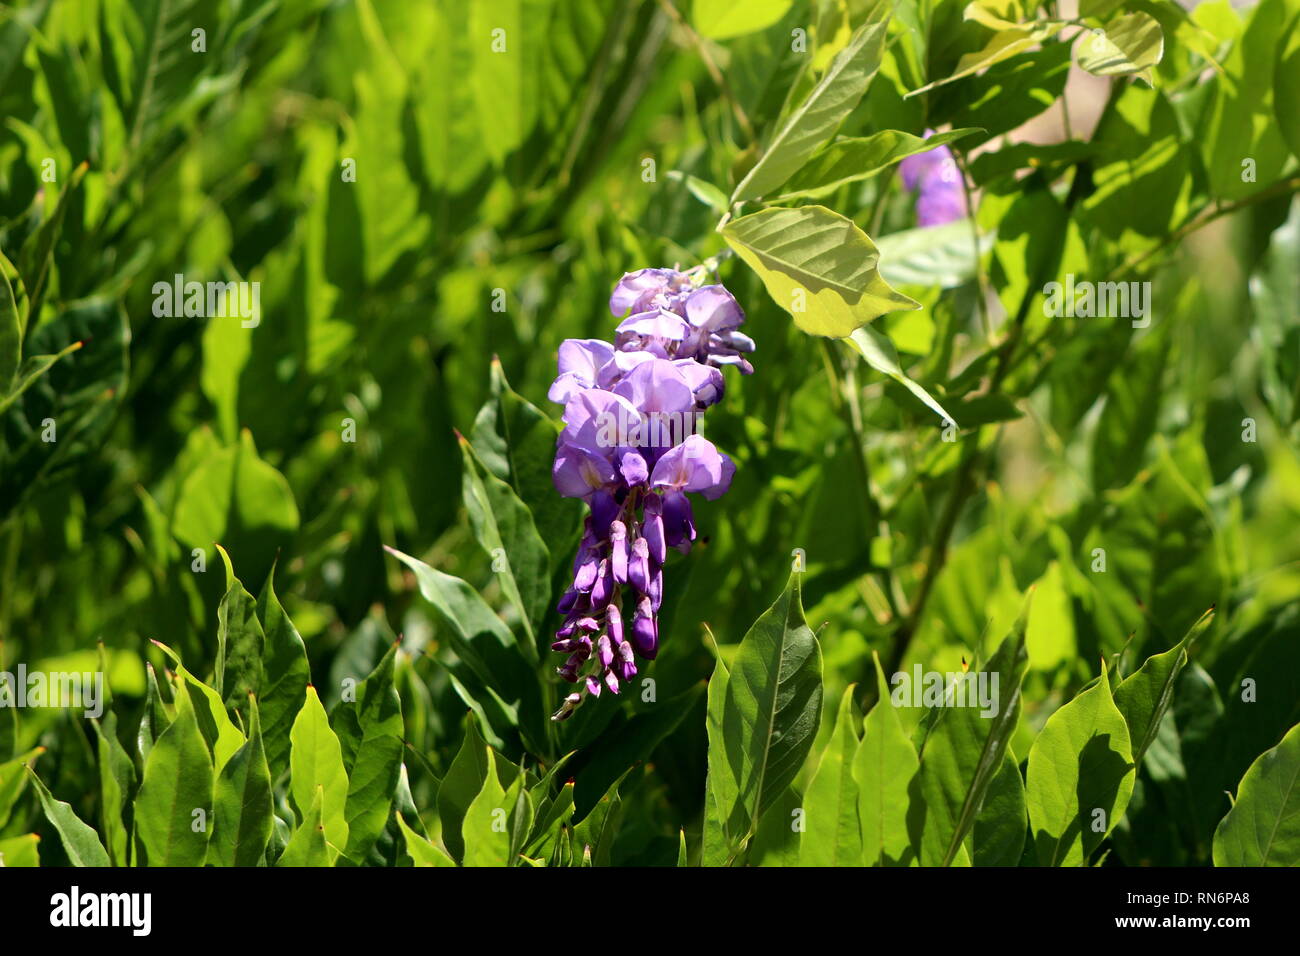 Wisteria planta con flores en racimos colgantes parcialmente abierto con pétalos violeta púrpura con alta densidad de hojas en días soleados Fotografía de stock Alamy